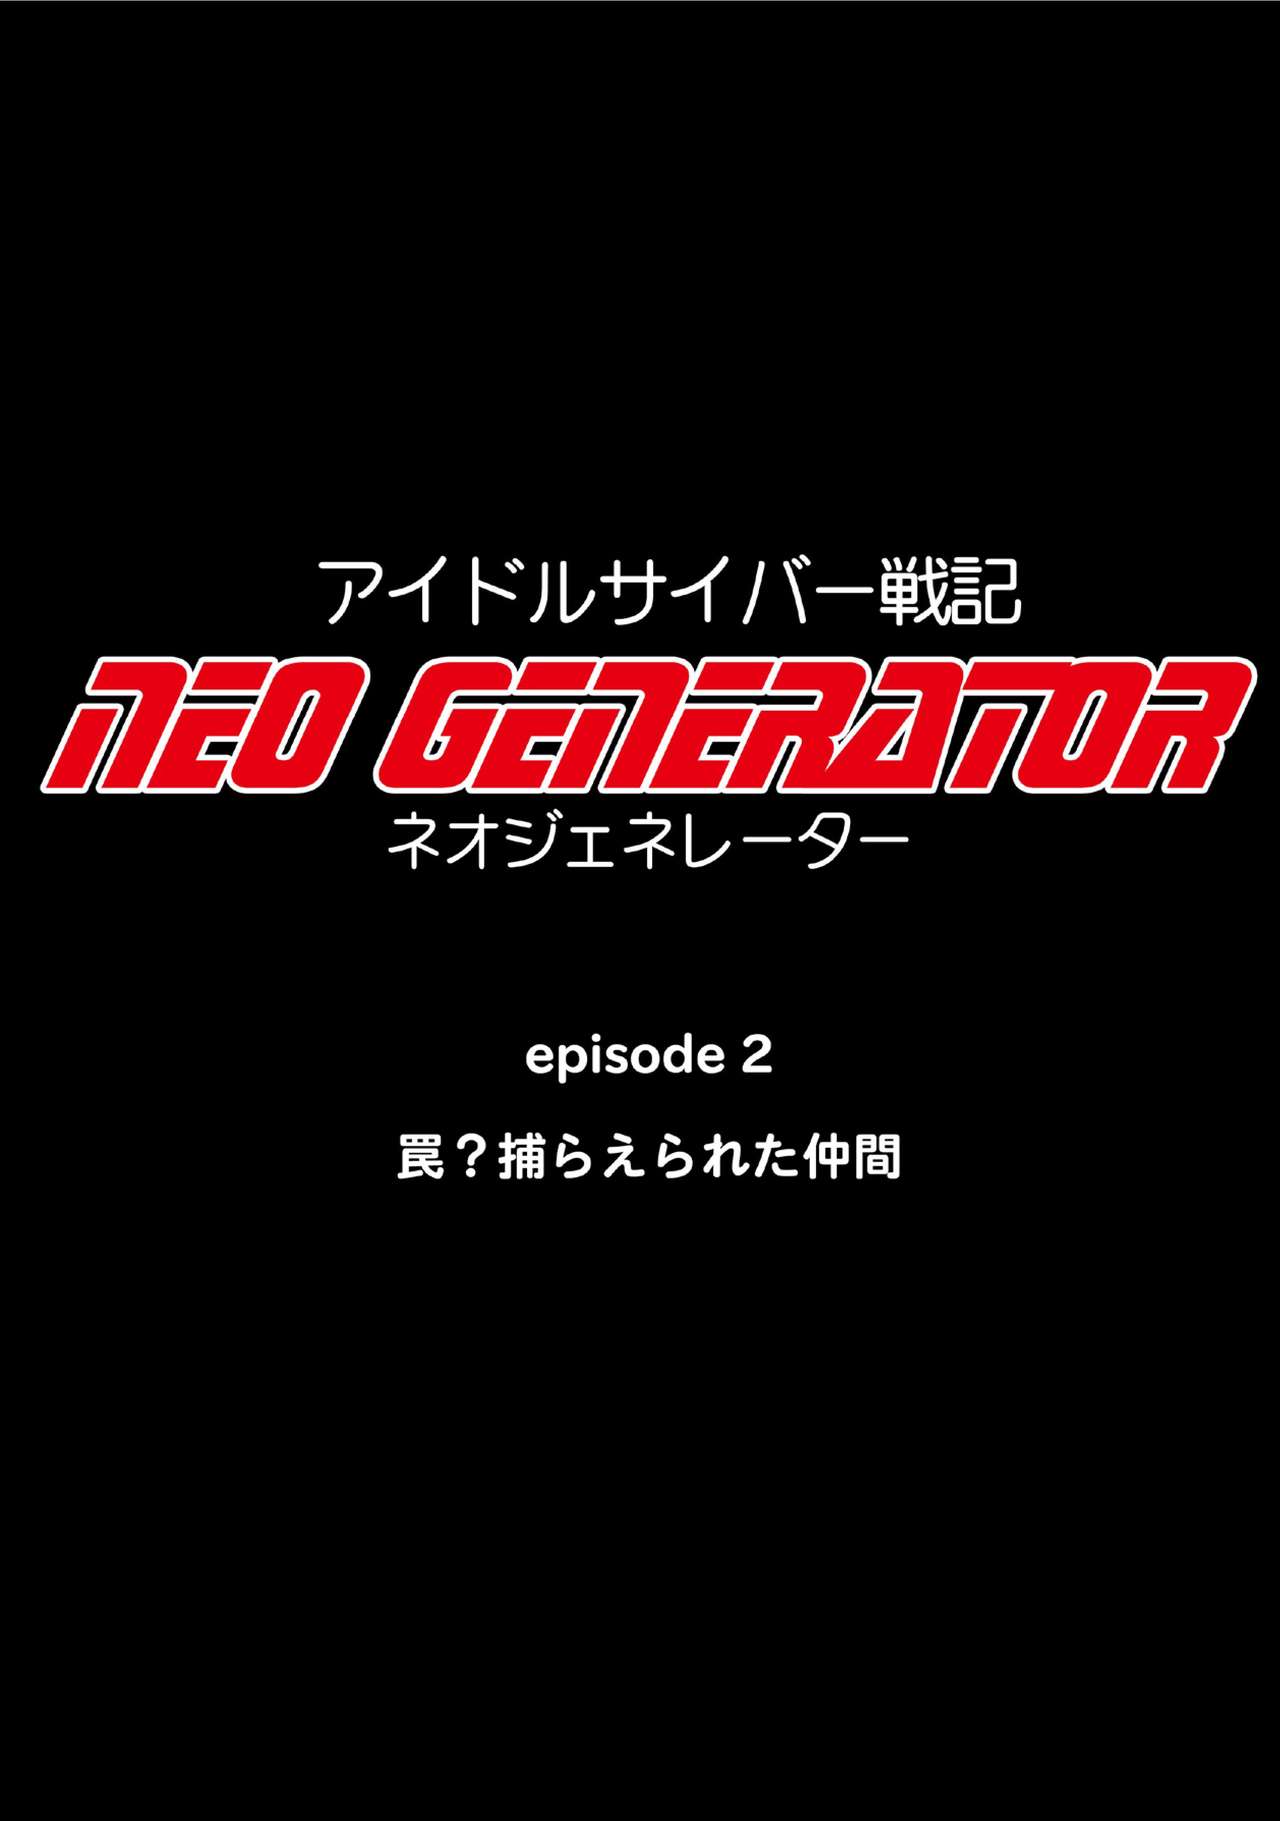 Idol Cyber Battle NEO GENERATOR episode 2 Wana? Torae rareta nakama page 15 full